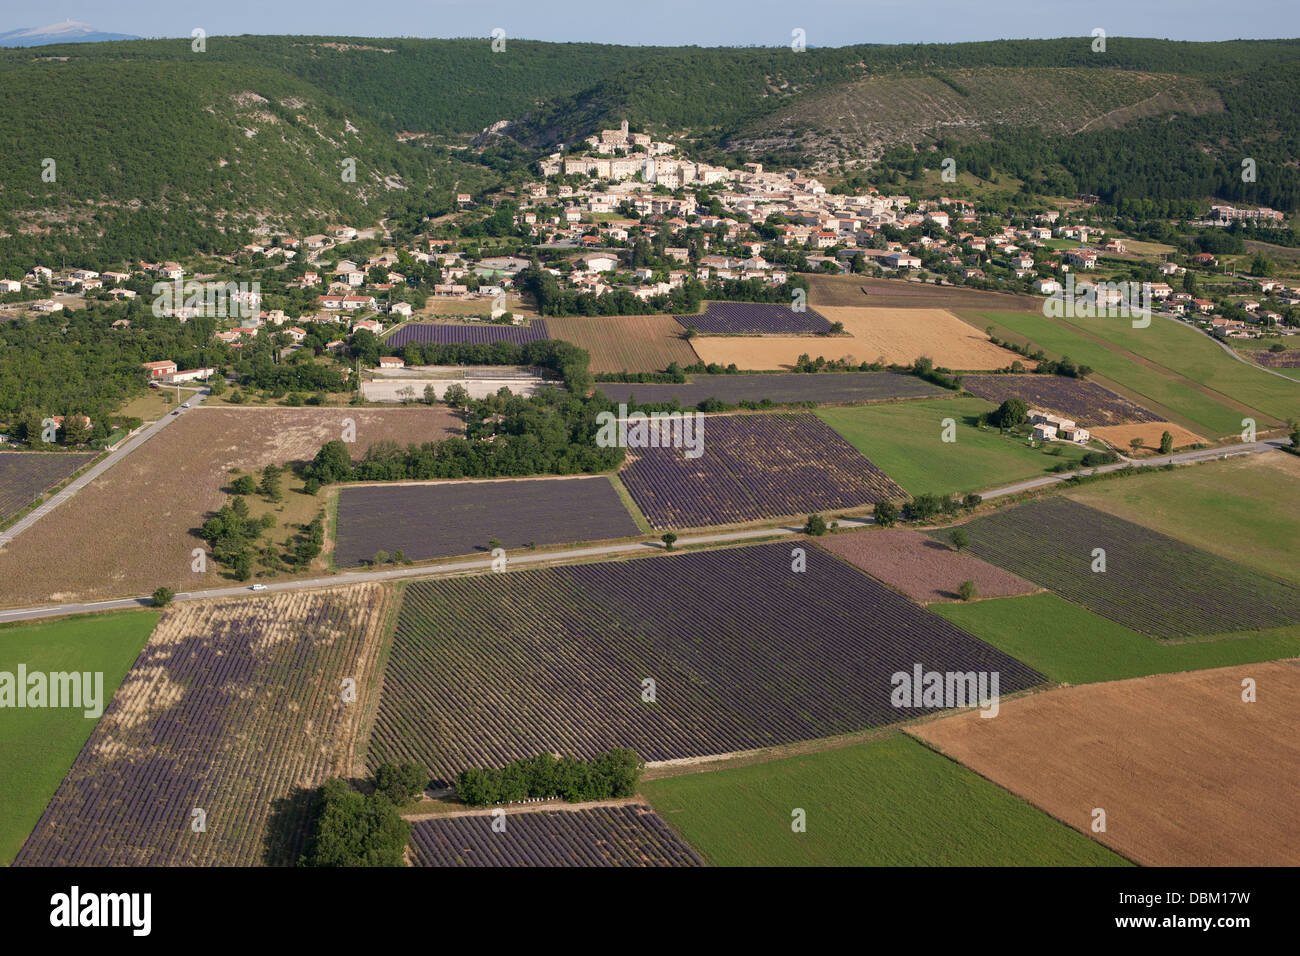 VUE AÉRIENNE.Village provençal au sommet d'une colline surplombant les champs de lavande en fleur.Banon, Alpes-de-haute-Provence, Provence, France. Banque D'Images